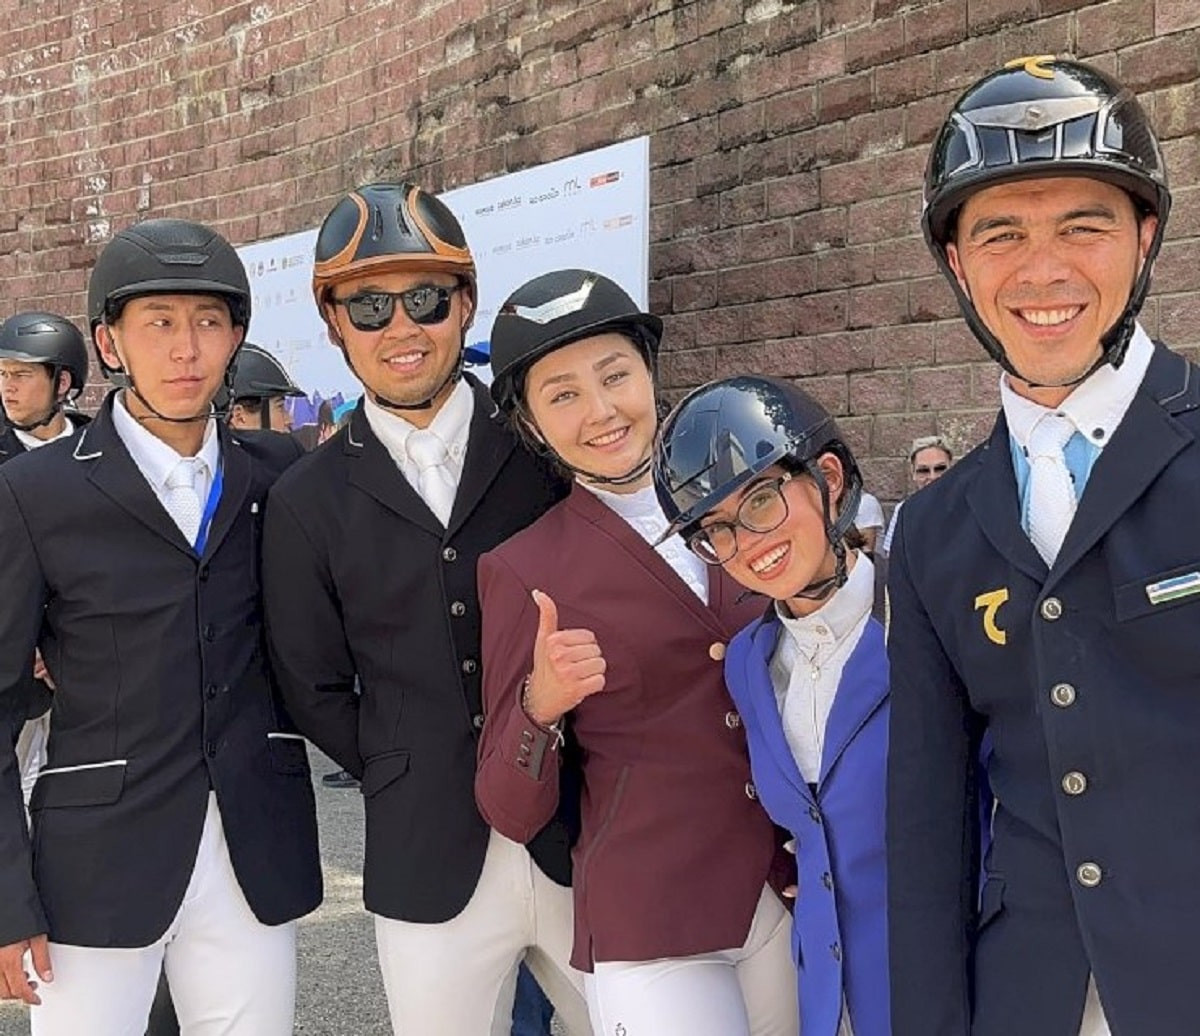 Соревнования по конному спорту проходят в Алматы